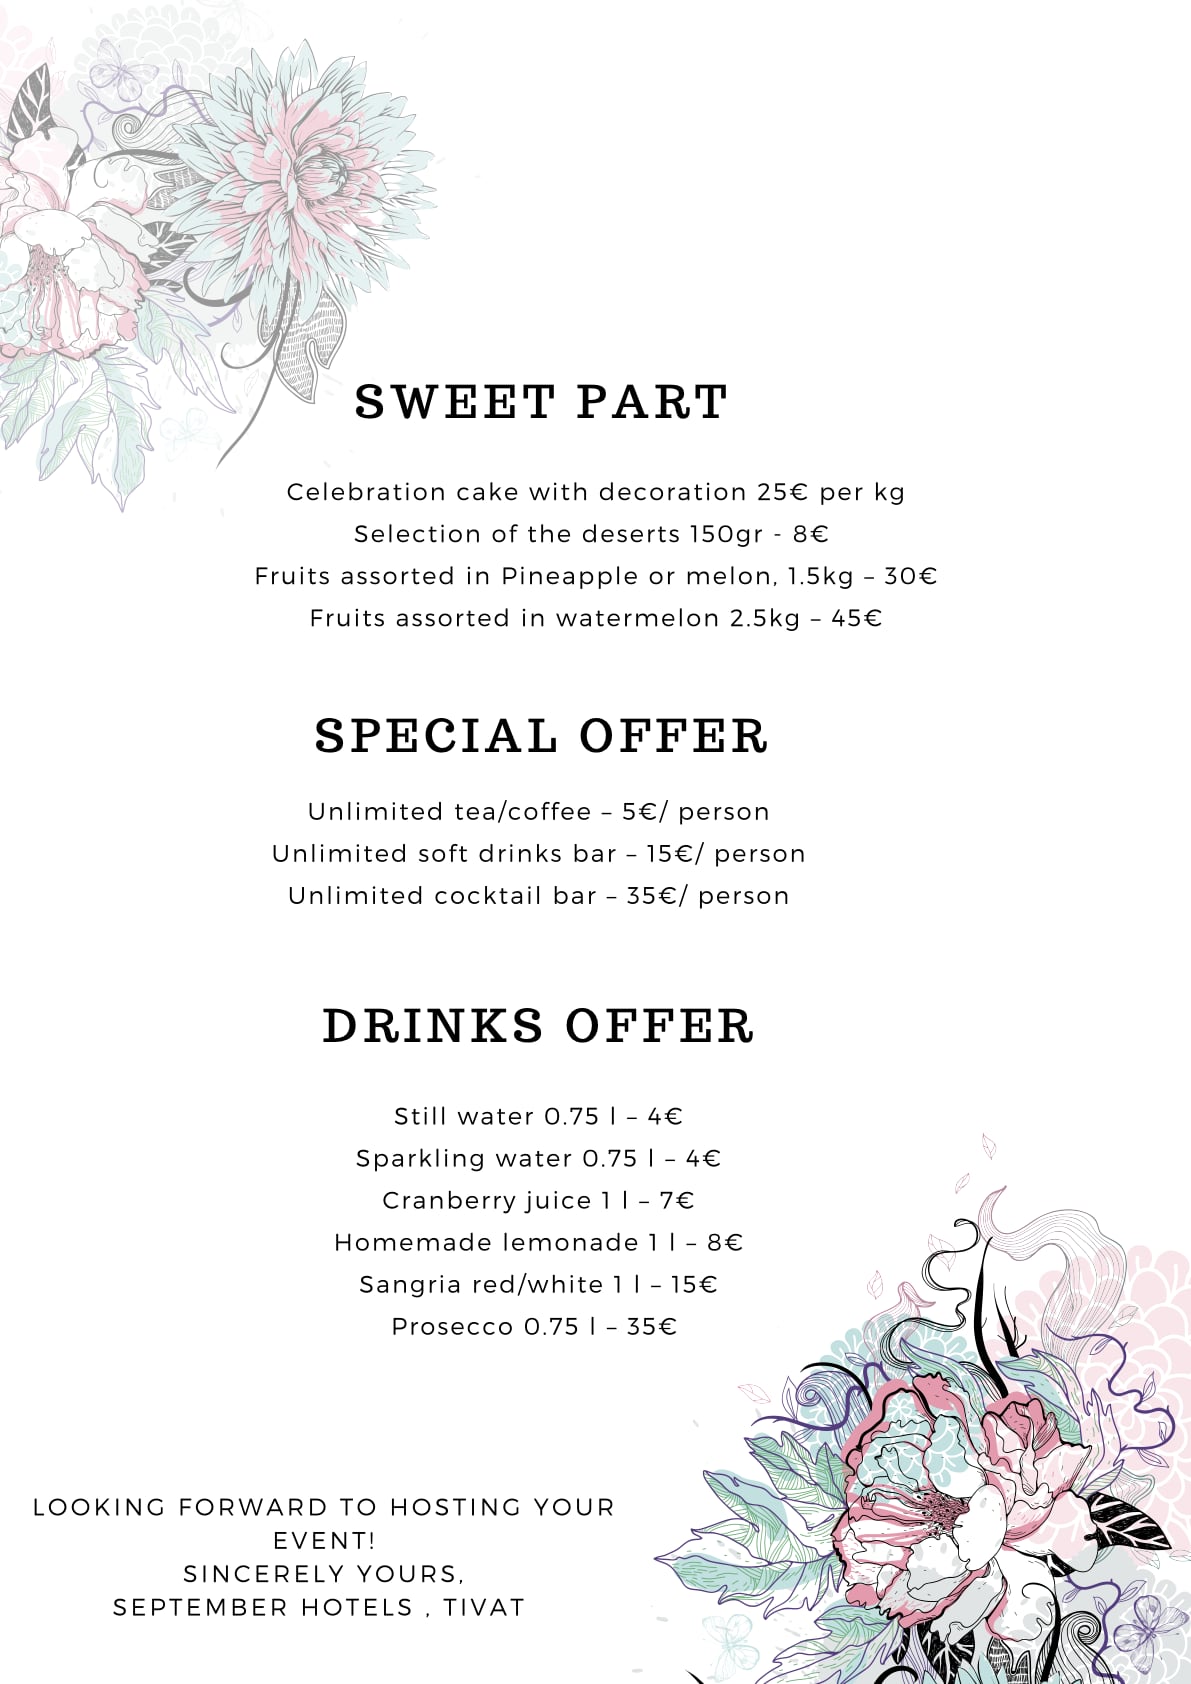 Sweet menu and drinks